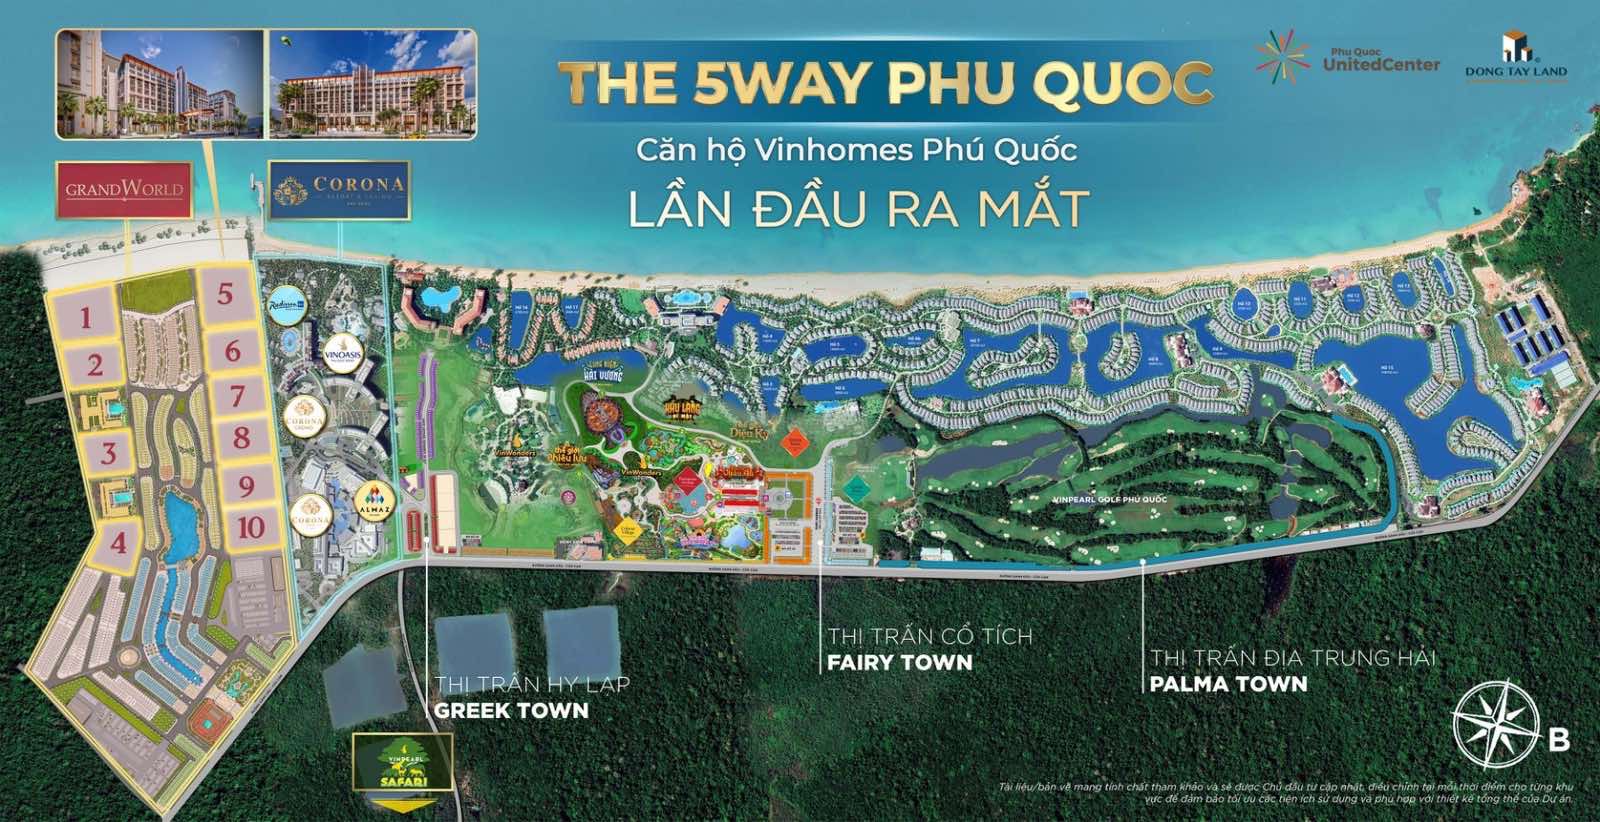 The Five way Phú Quốc